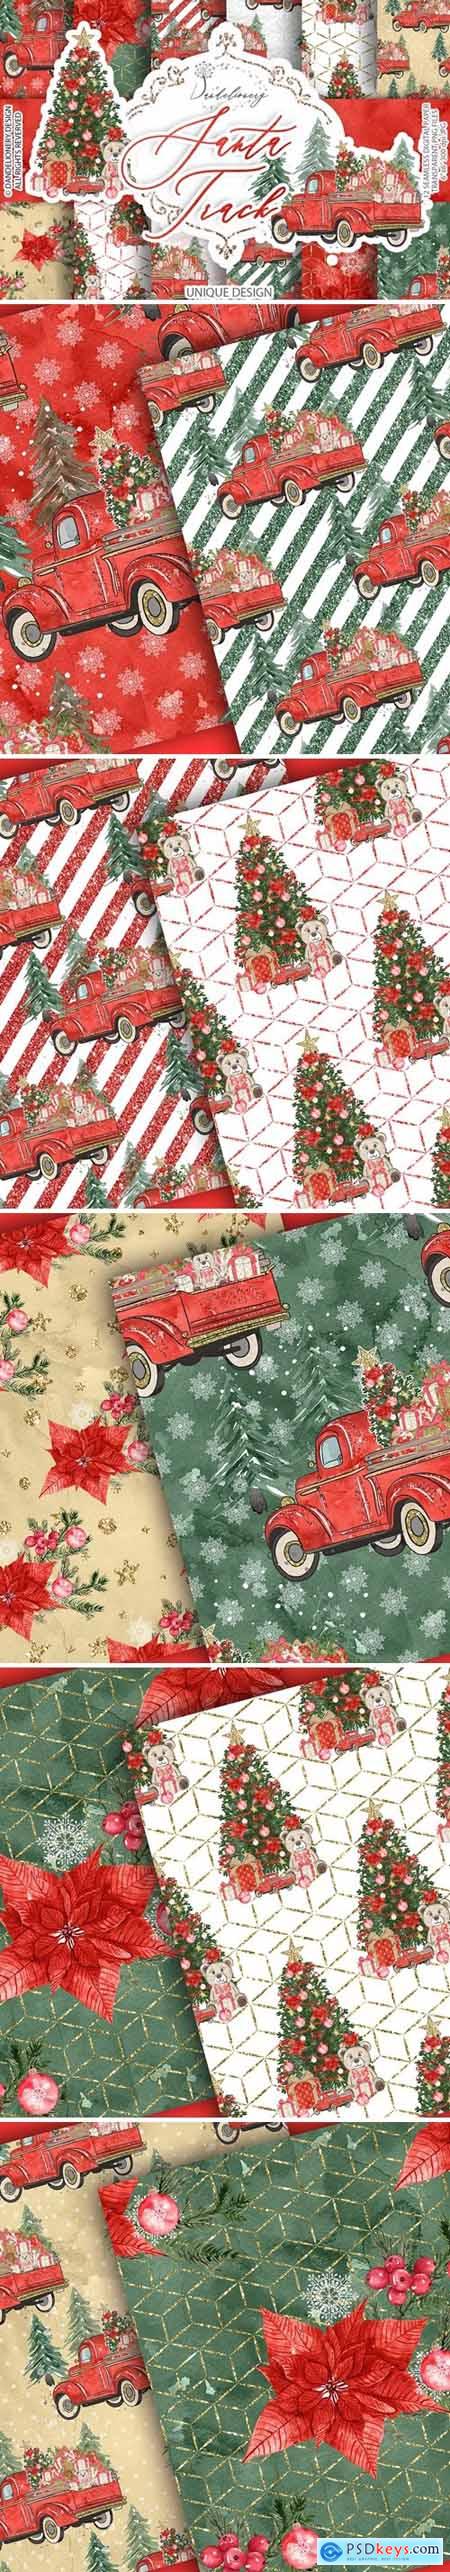 Christmas Car digital paper pack